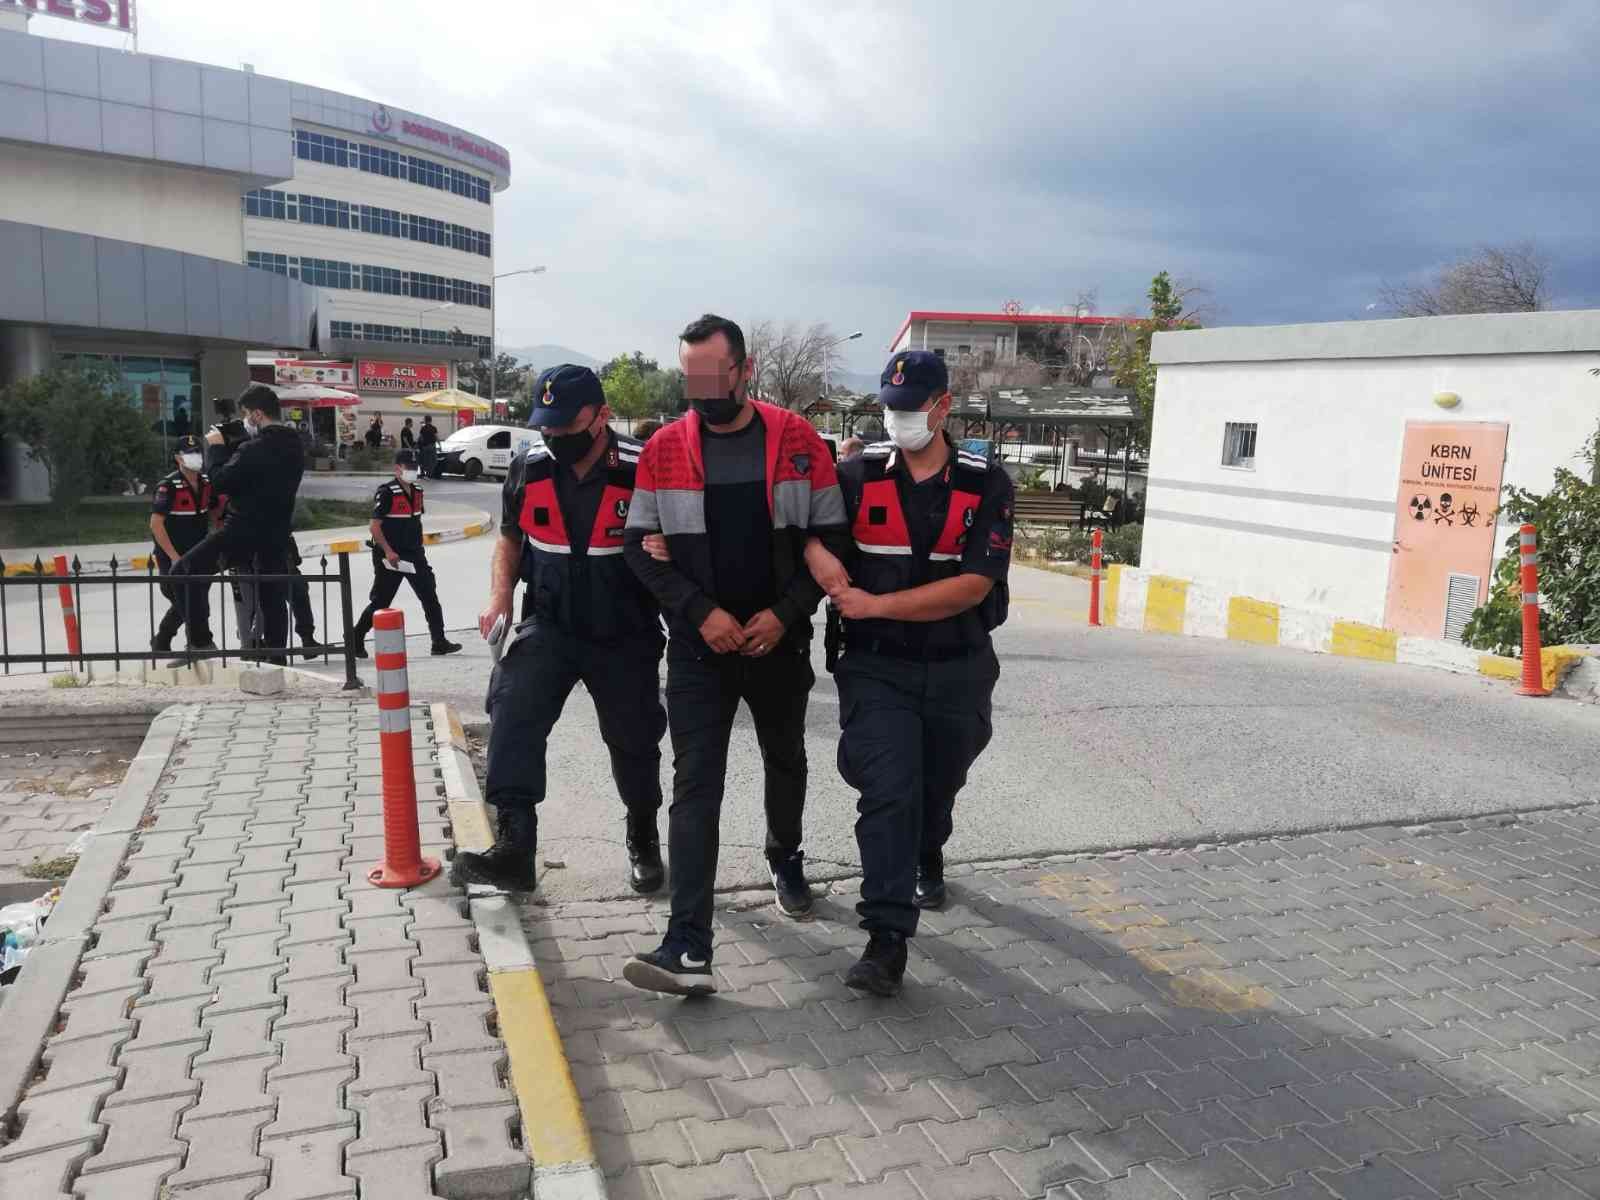 Yeşil reçete şebekesine operasyonda 26 gözaltı: Aralarında doktorlar da var #izmir